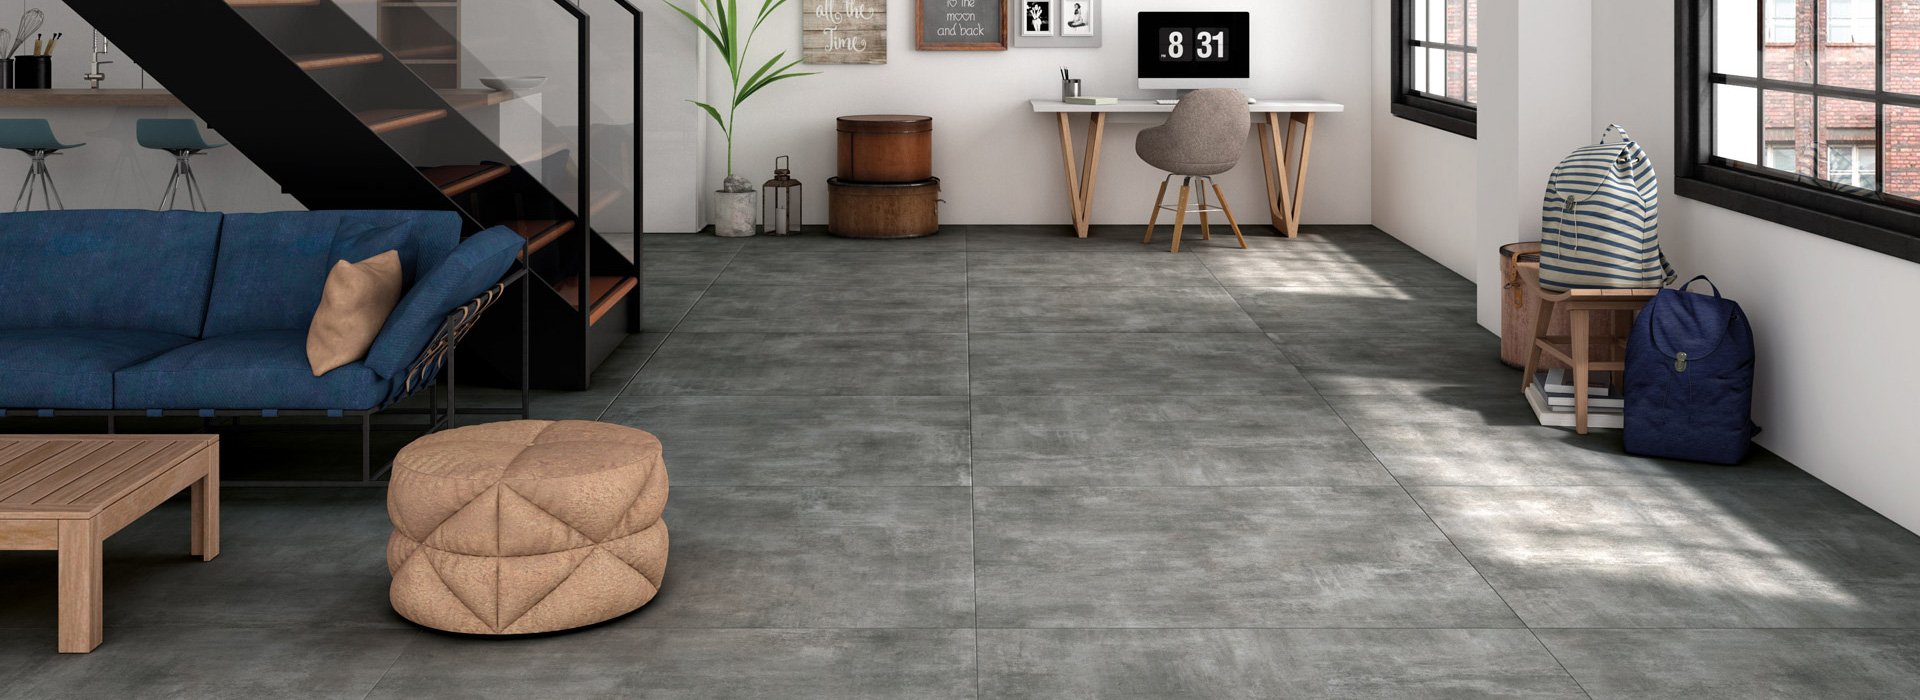 Living Area Floor Tiles